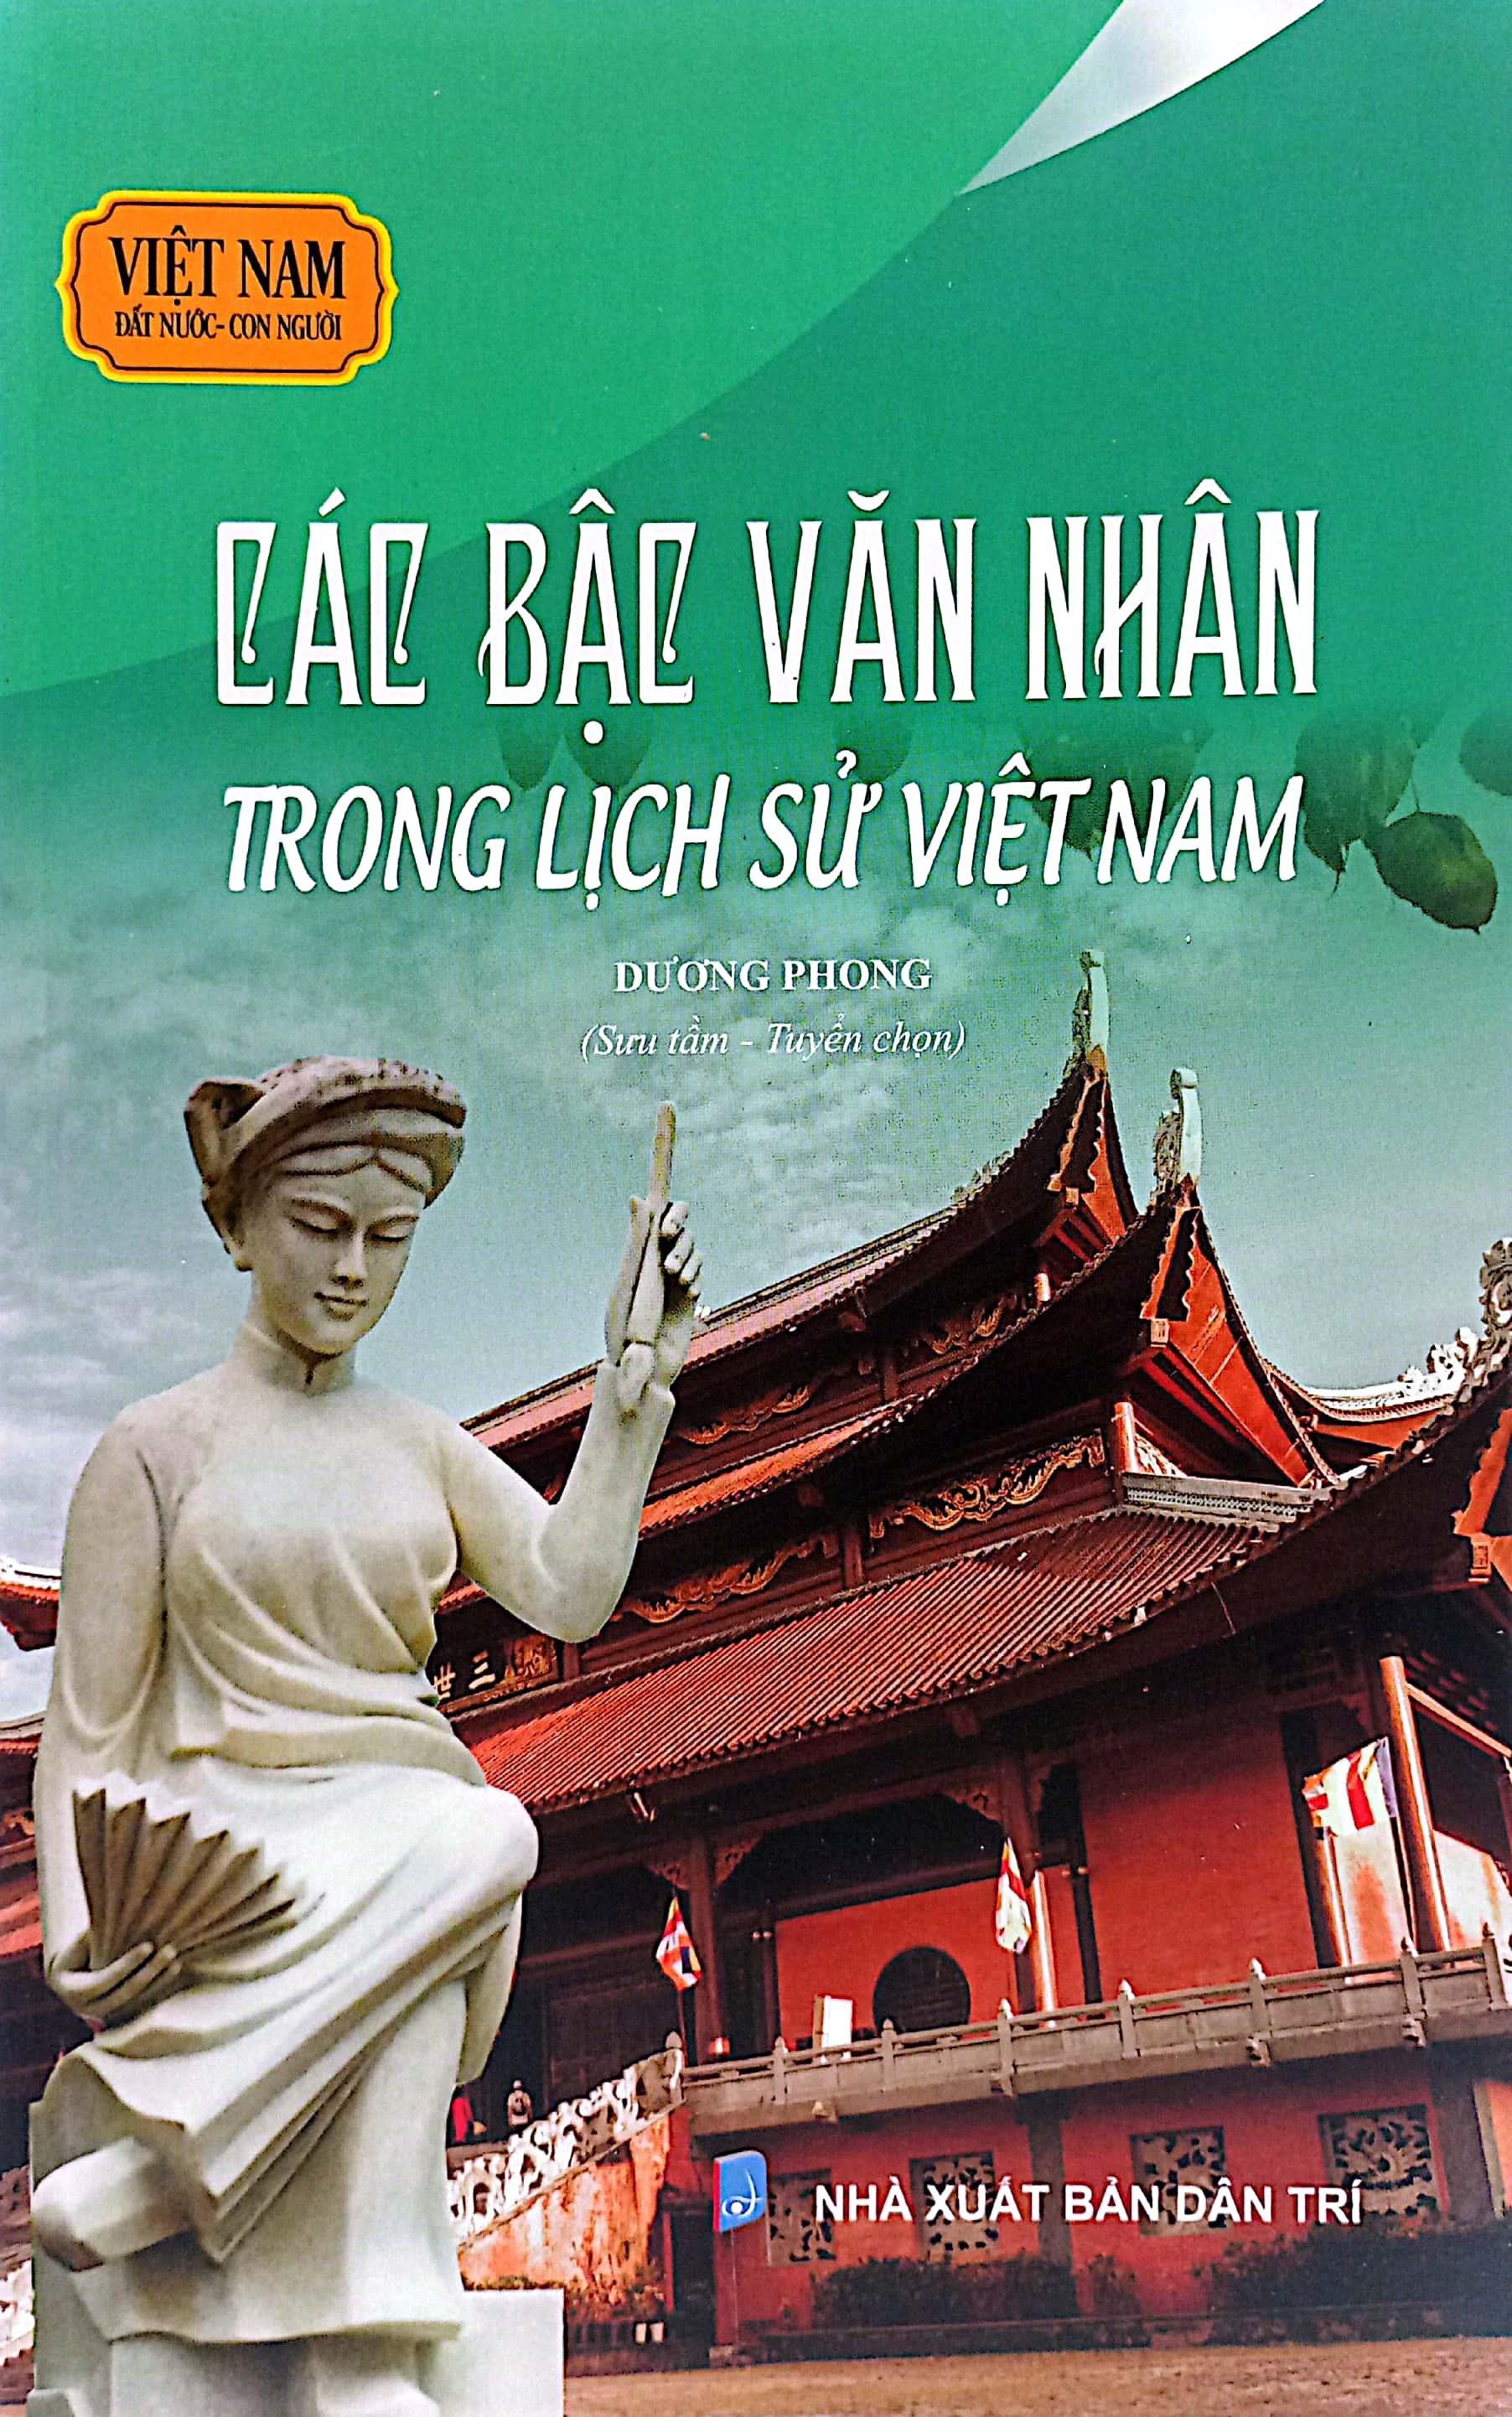 Việt Nam Đất Nước-Con Người - Các Bậc Văn Nhân Trong Lịch Sử Việt Nam